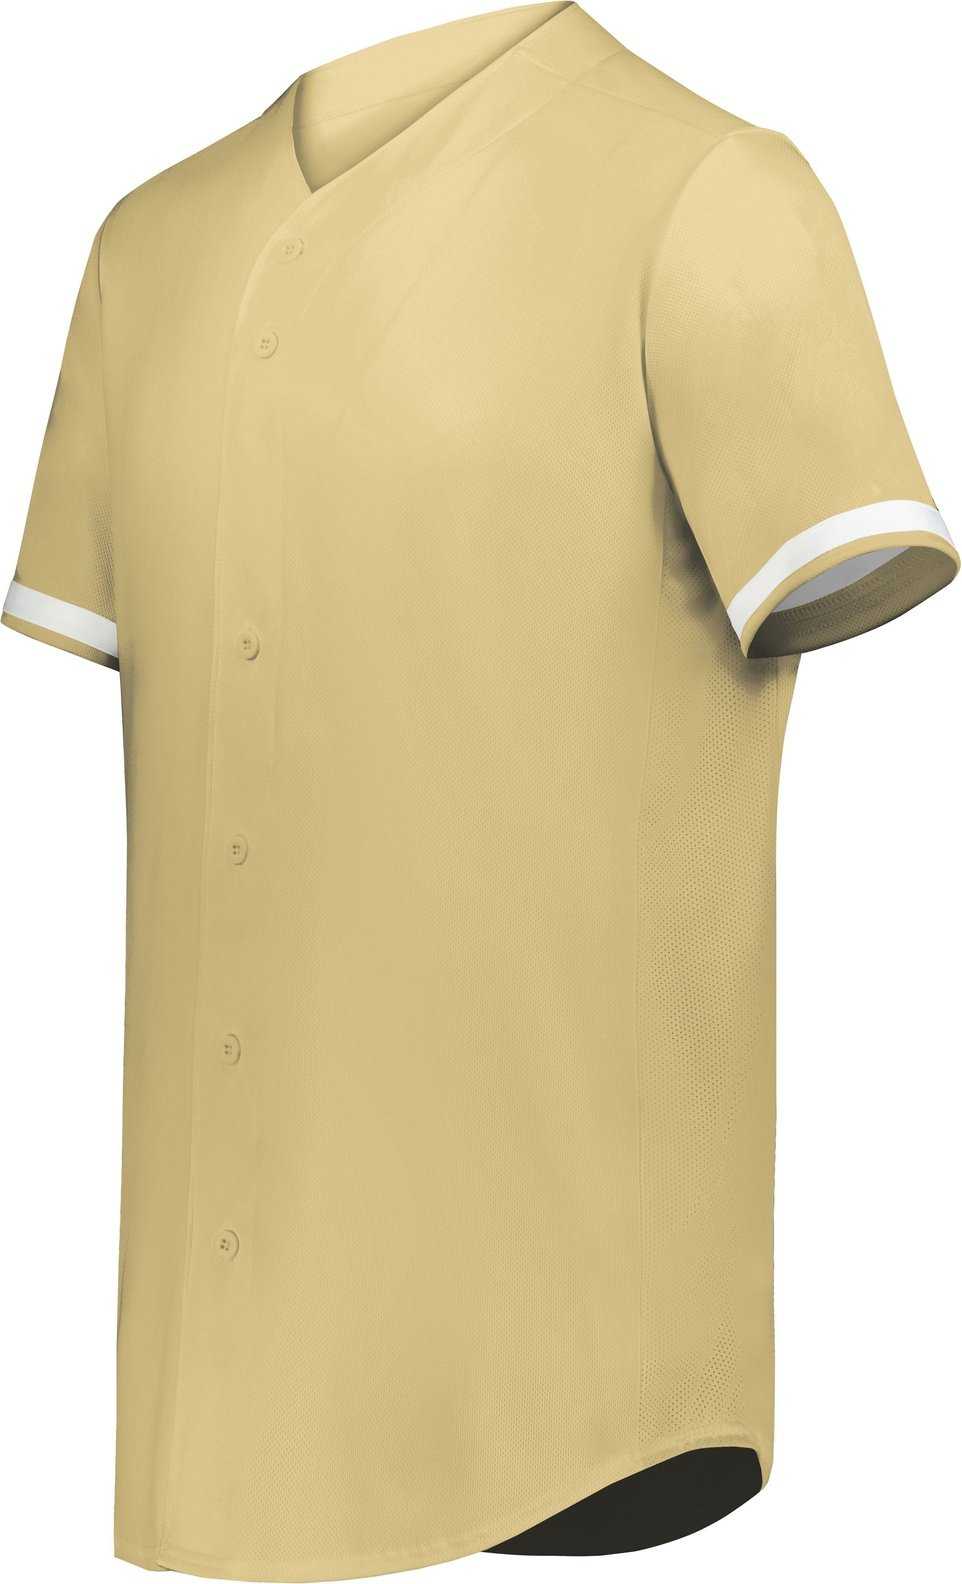 Augusta 6909 Cutter+ Full Button Baseball Jersey - Vegas Gold White - HIT a Double